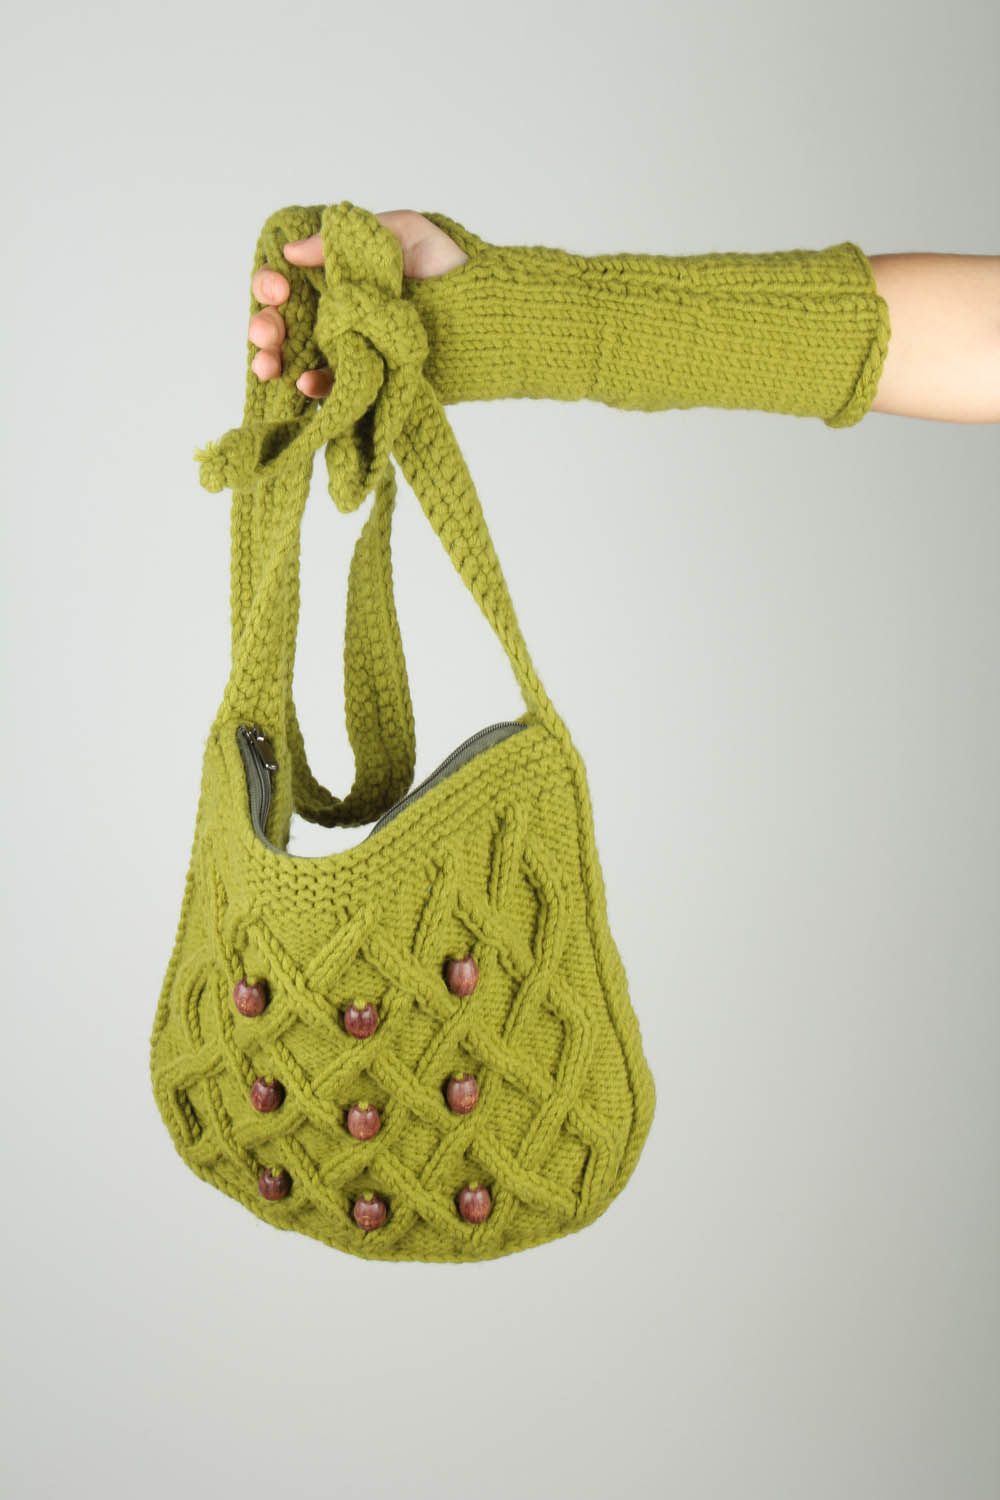 Sac tricoté avec mitaines faites main photo 2